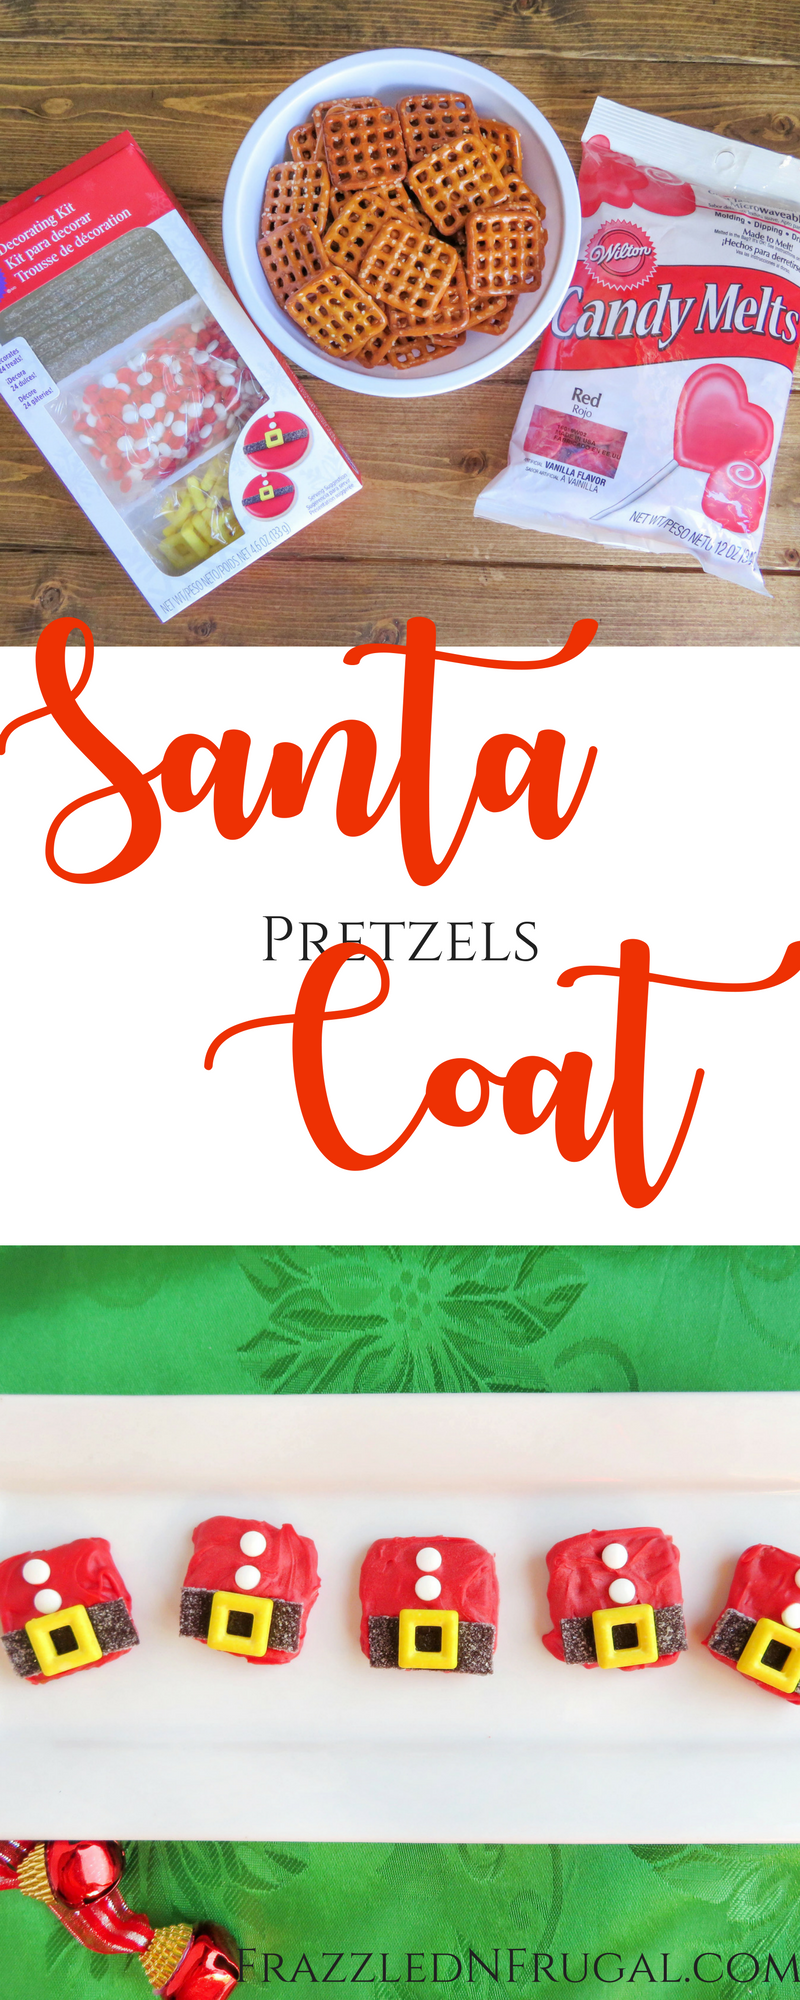 Santa Coat Pretzel Cookies